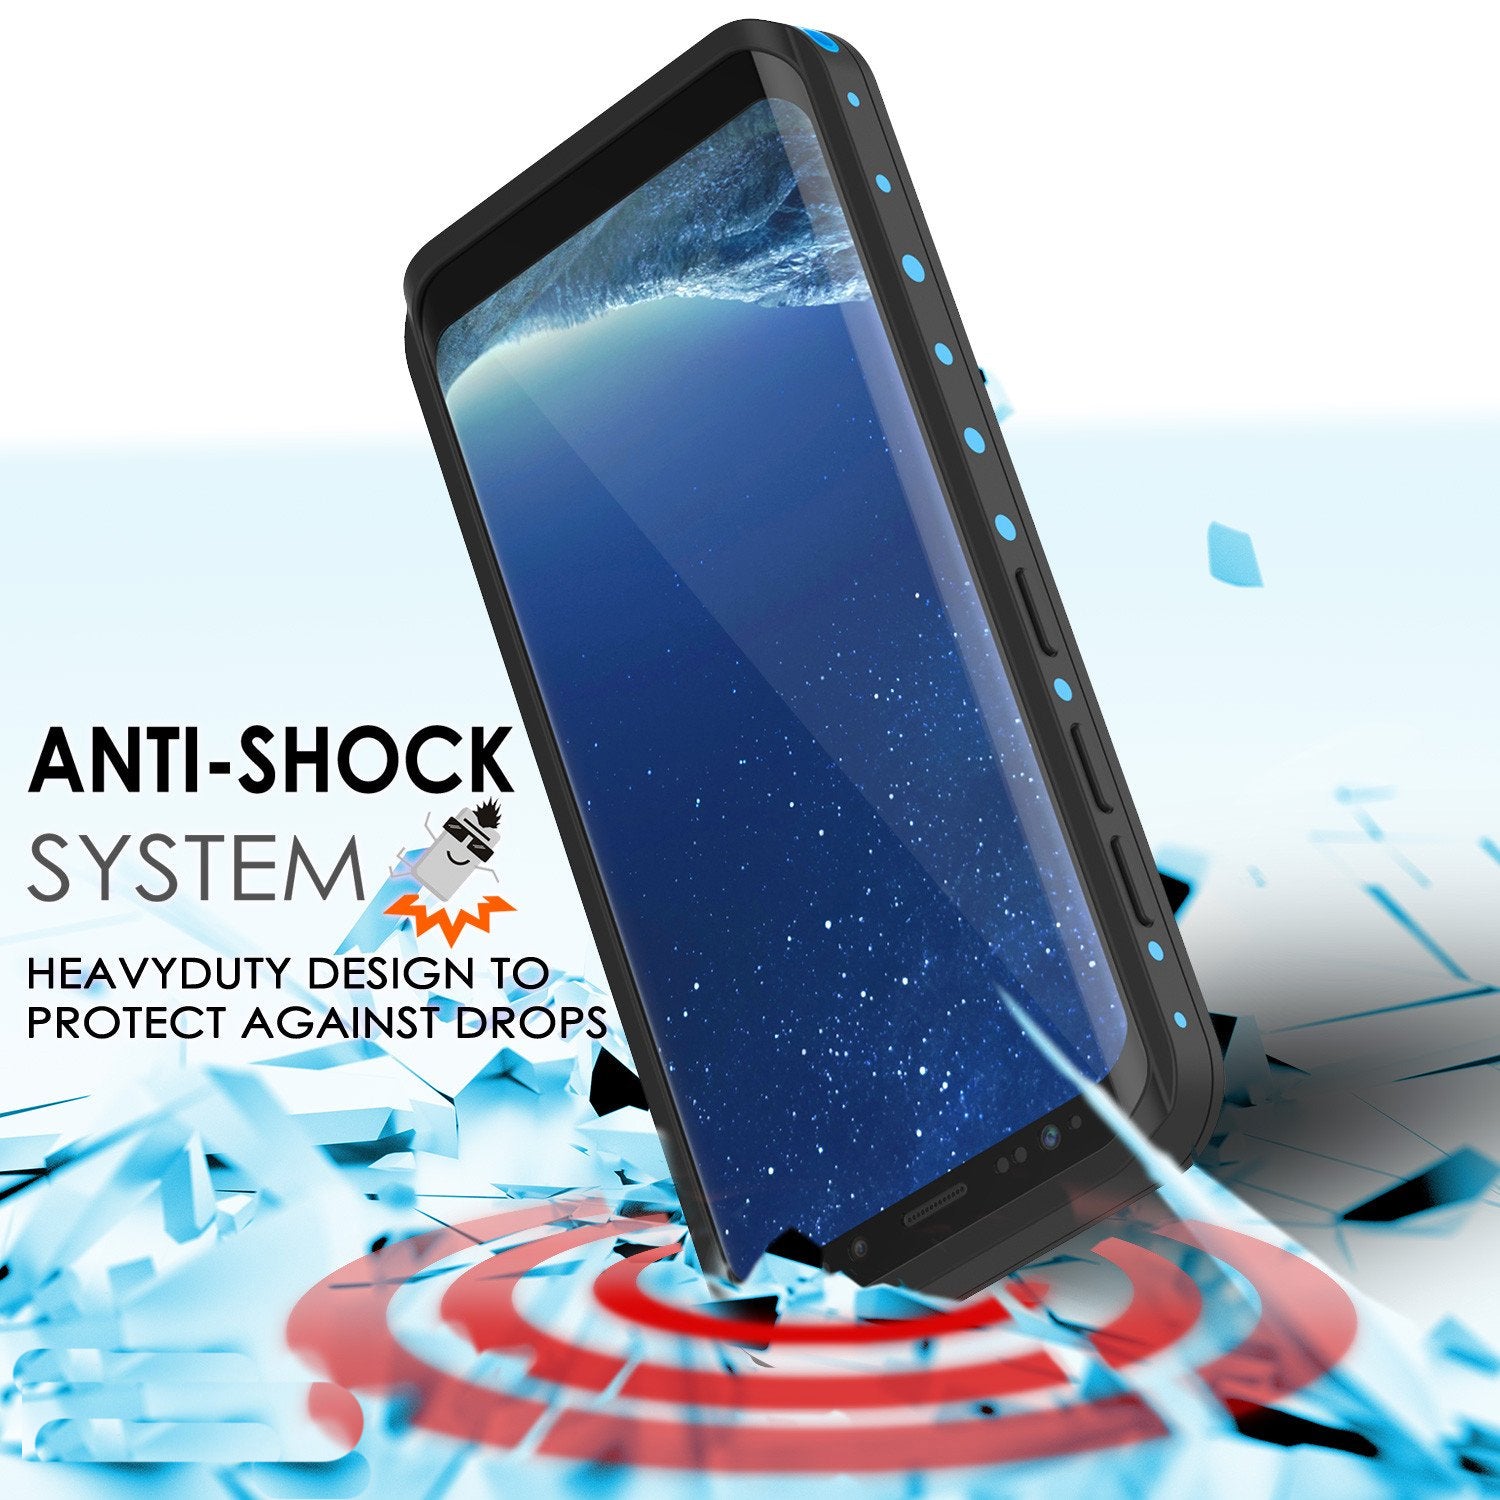 Galaxy S8 Waterproof Case PunkCase StudStar Light Blue